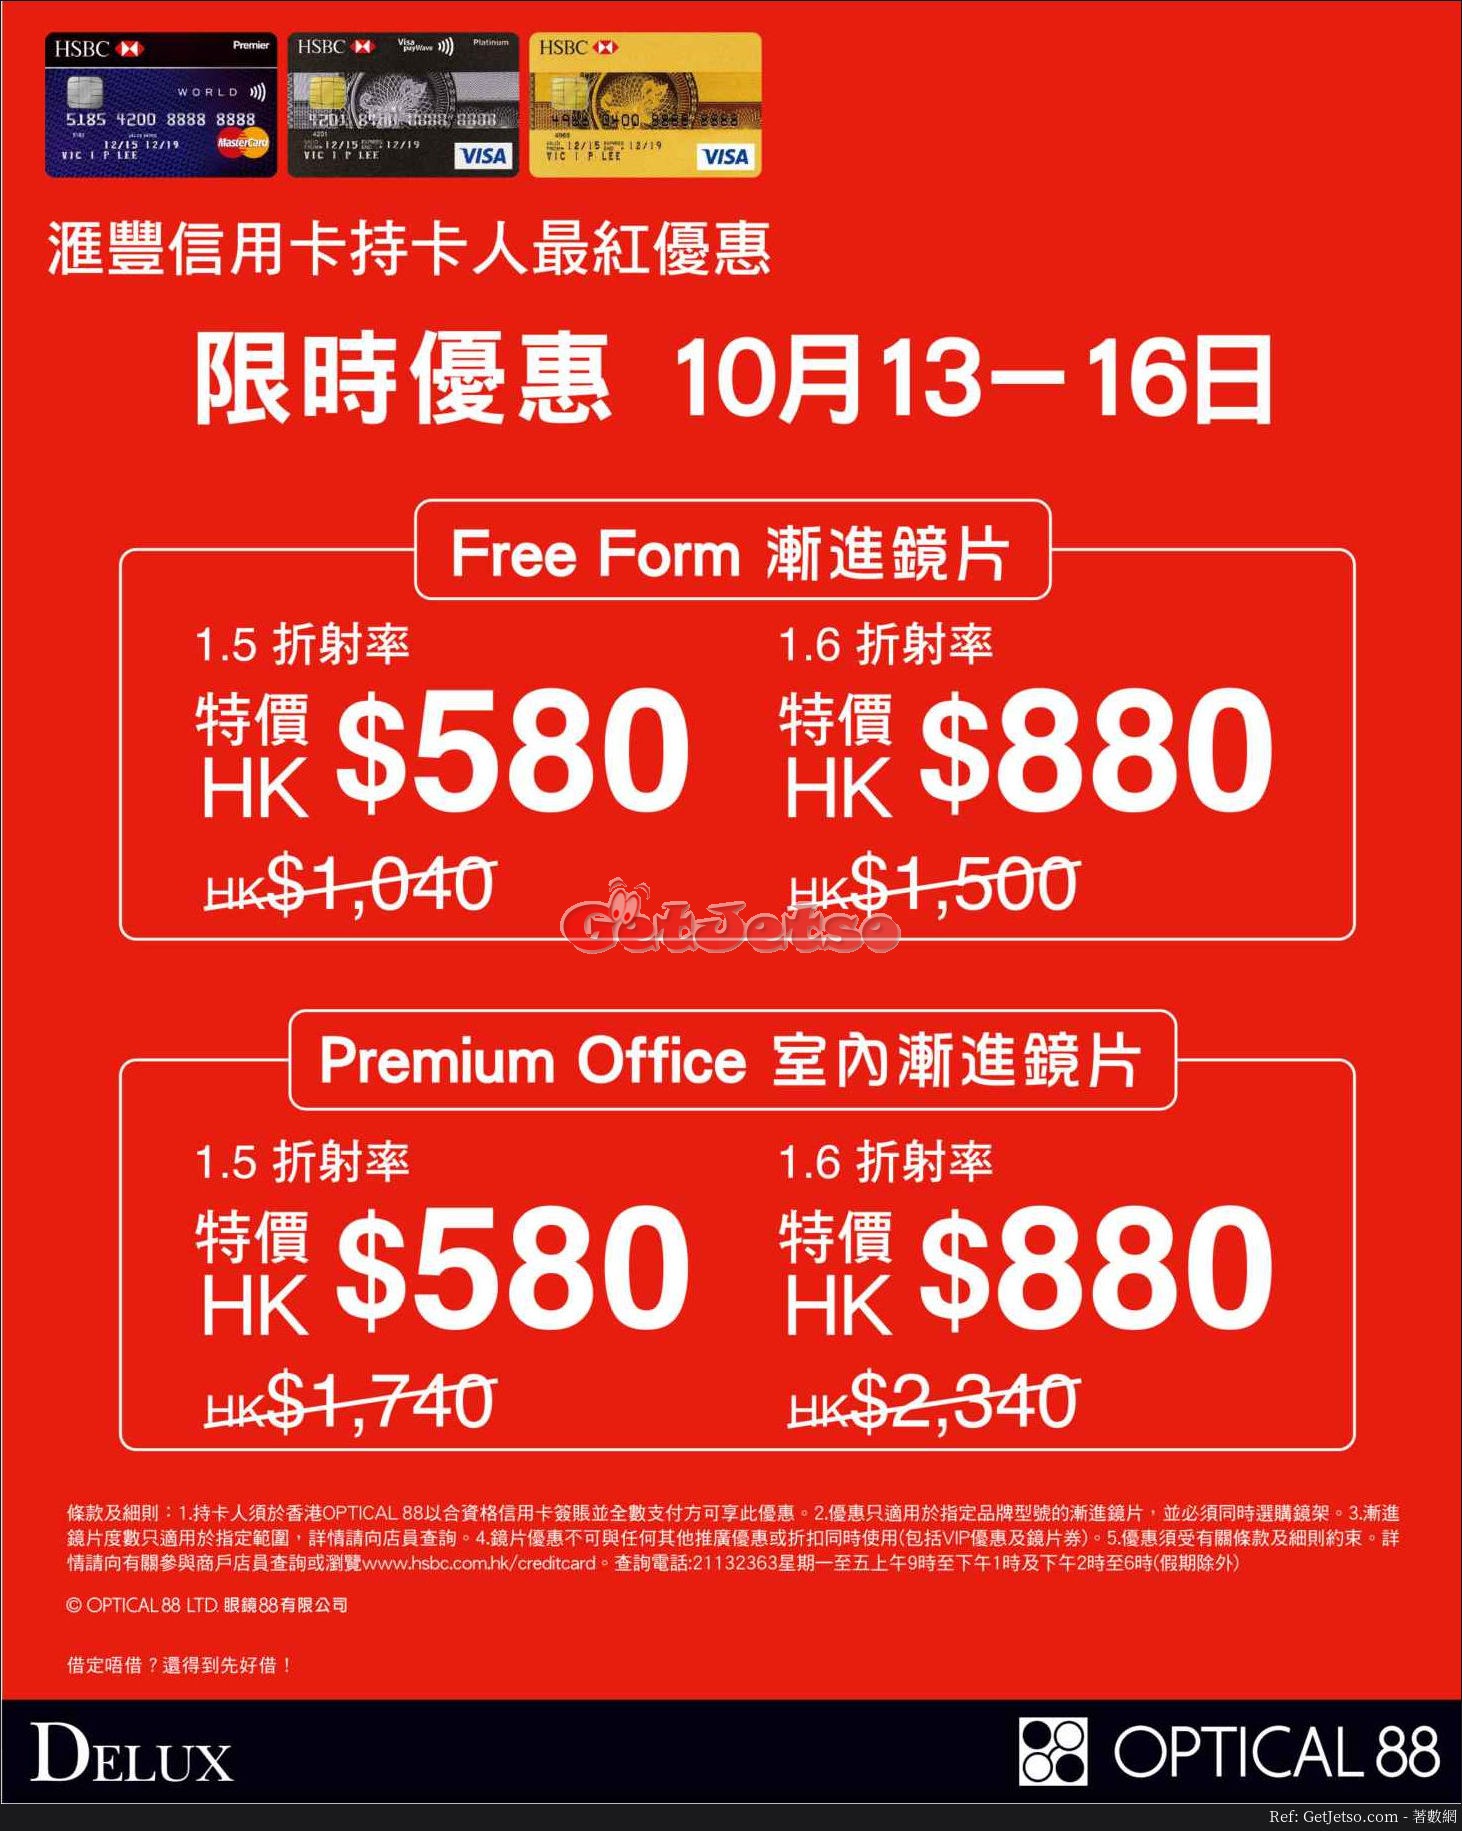 眼鏡88 低至4折優惠@滙豐信用卡(17年10月13-16日)圖片1